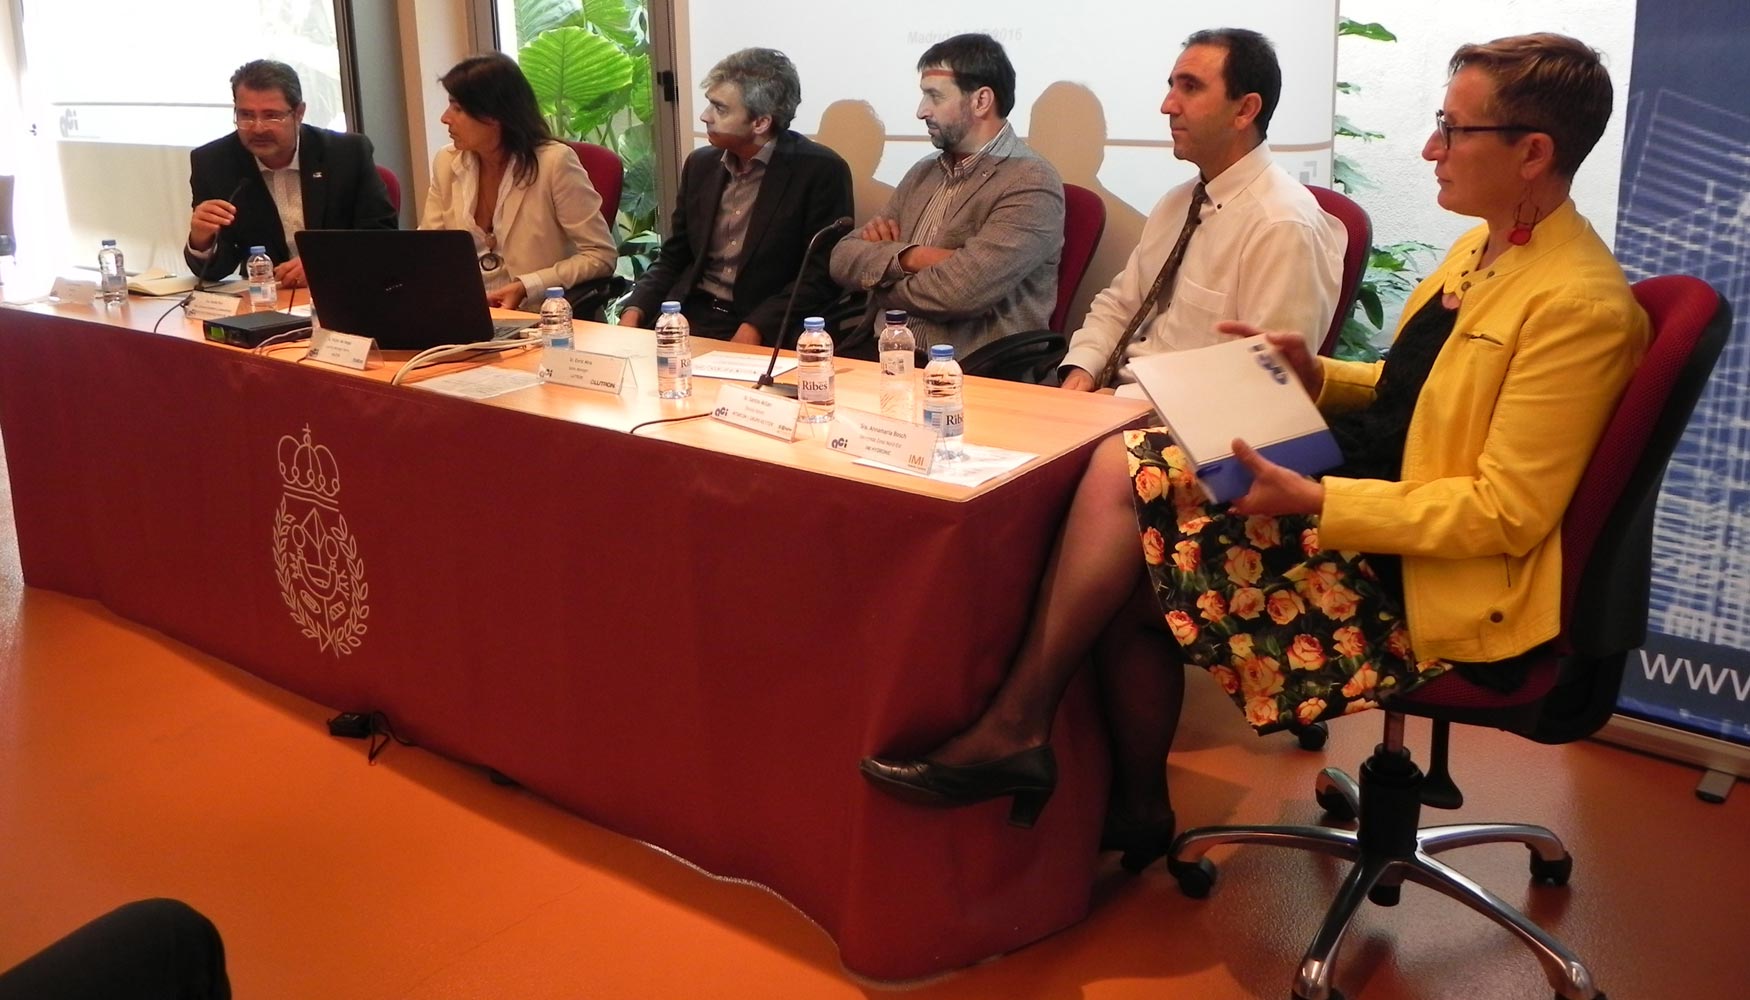 De izquierda a derecha: Llus Termes, Corala Pino, Vctor del Nogal, Enric Mira, Javier Cano y Annamaria Bosch